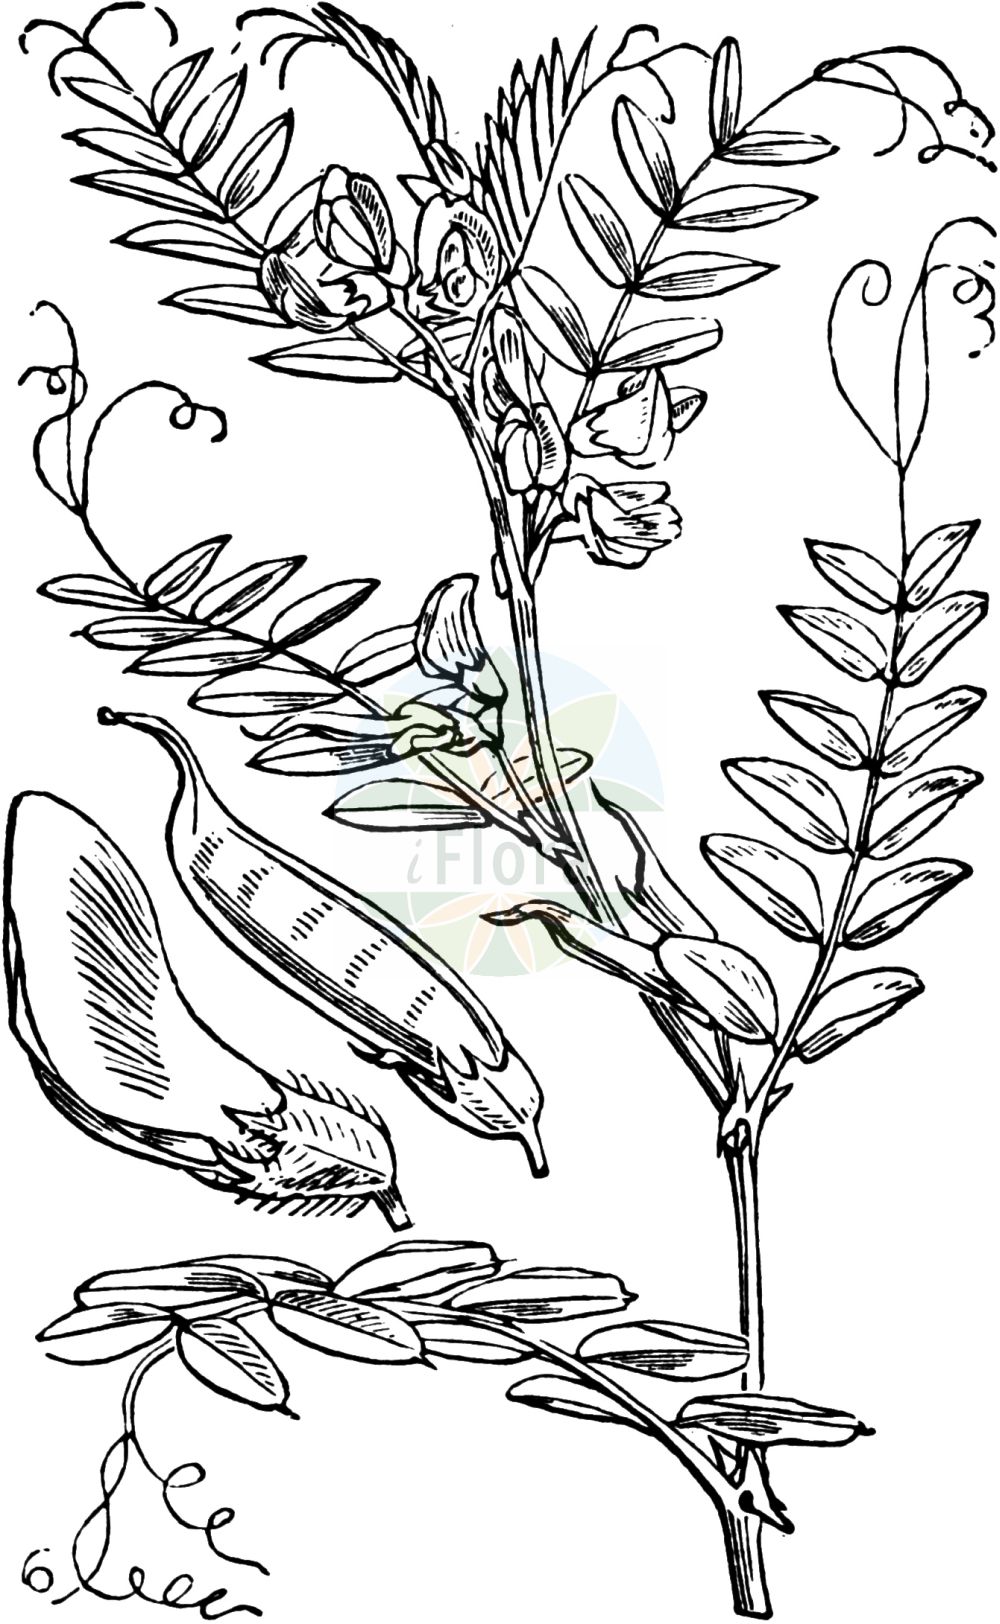 Historische Abbildung von Vicia sepium (Zaun-Wicke - Bush Vetch). Das Bild zeigt Blatt, Bluete, Frucht und Same. ---- Historical Drawing of Vicia sepium (Zaun-Wicke - Bush Vetch). The image is showing leaf, flower, fruit and seed.(Vicia sepium,Zaun-Wicke,Bush Vetch,Vicia basilei,Vicia sepium,Zaun-Wicke,Bush Vetch,Hedge Vetch,Wood Vetch,Vicia,Wicke,Vetch,Fabaceae,Schmetterlingsblütler,Pea family,Blatt,Bluete,Frucht,Same,leaf,flower,fruit,seed,Fitch et al. (1880))